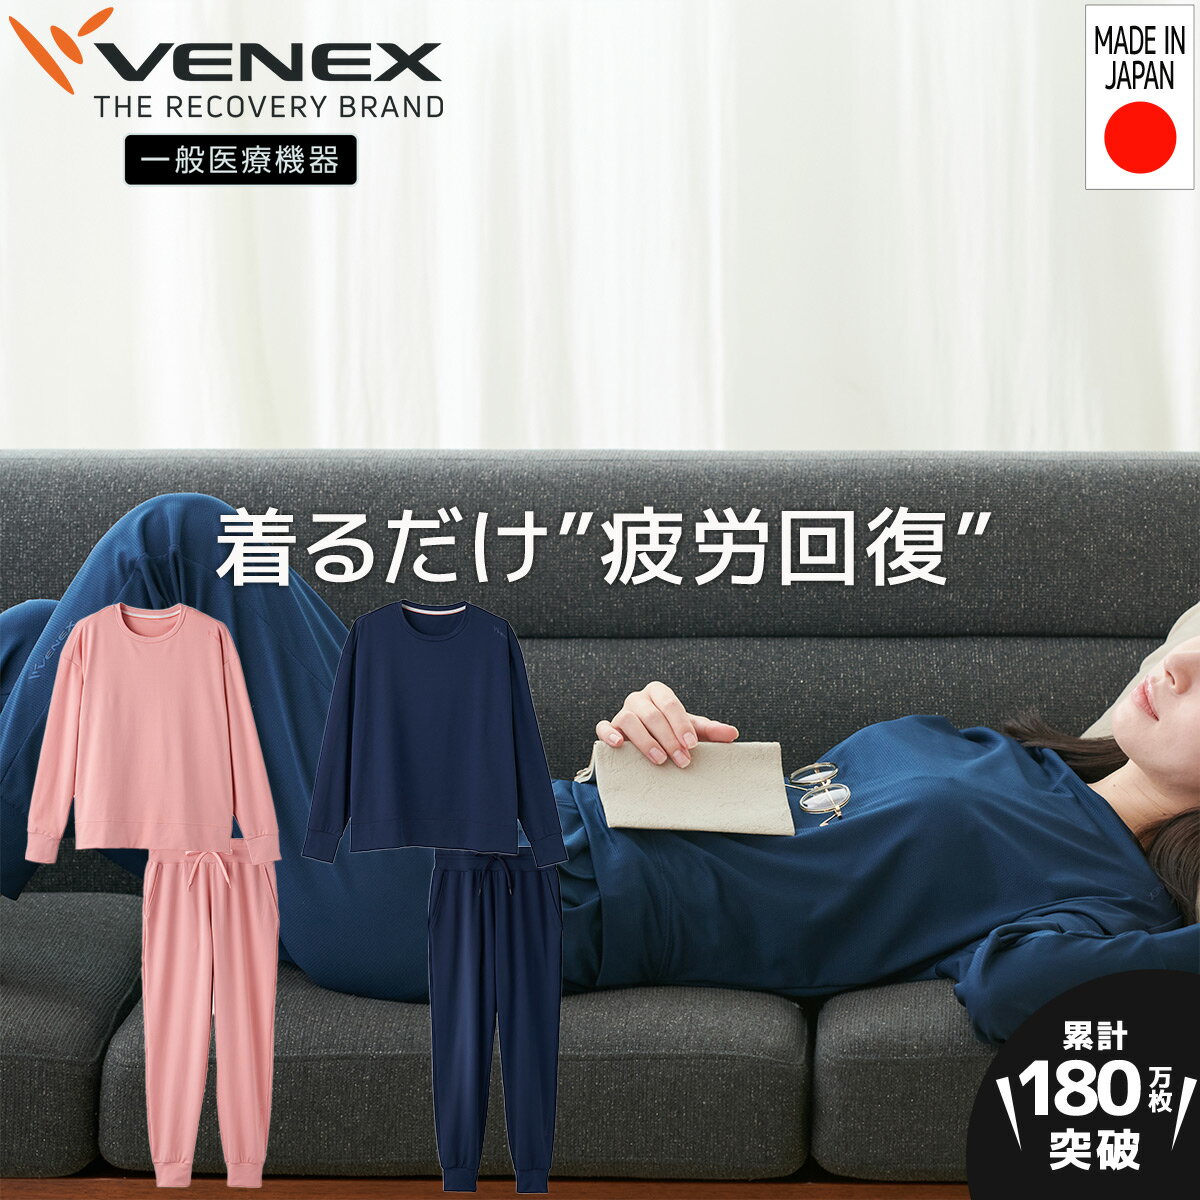 【公式】VENEX 一般医療機器 上下セ